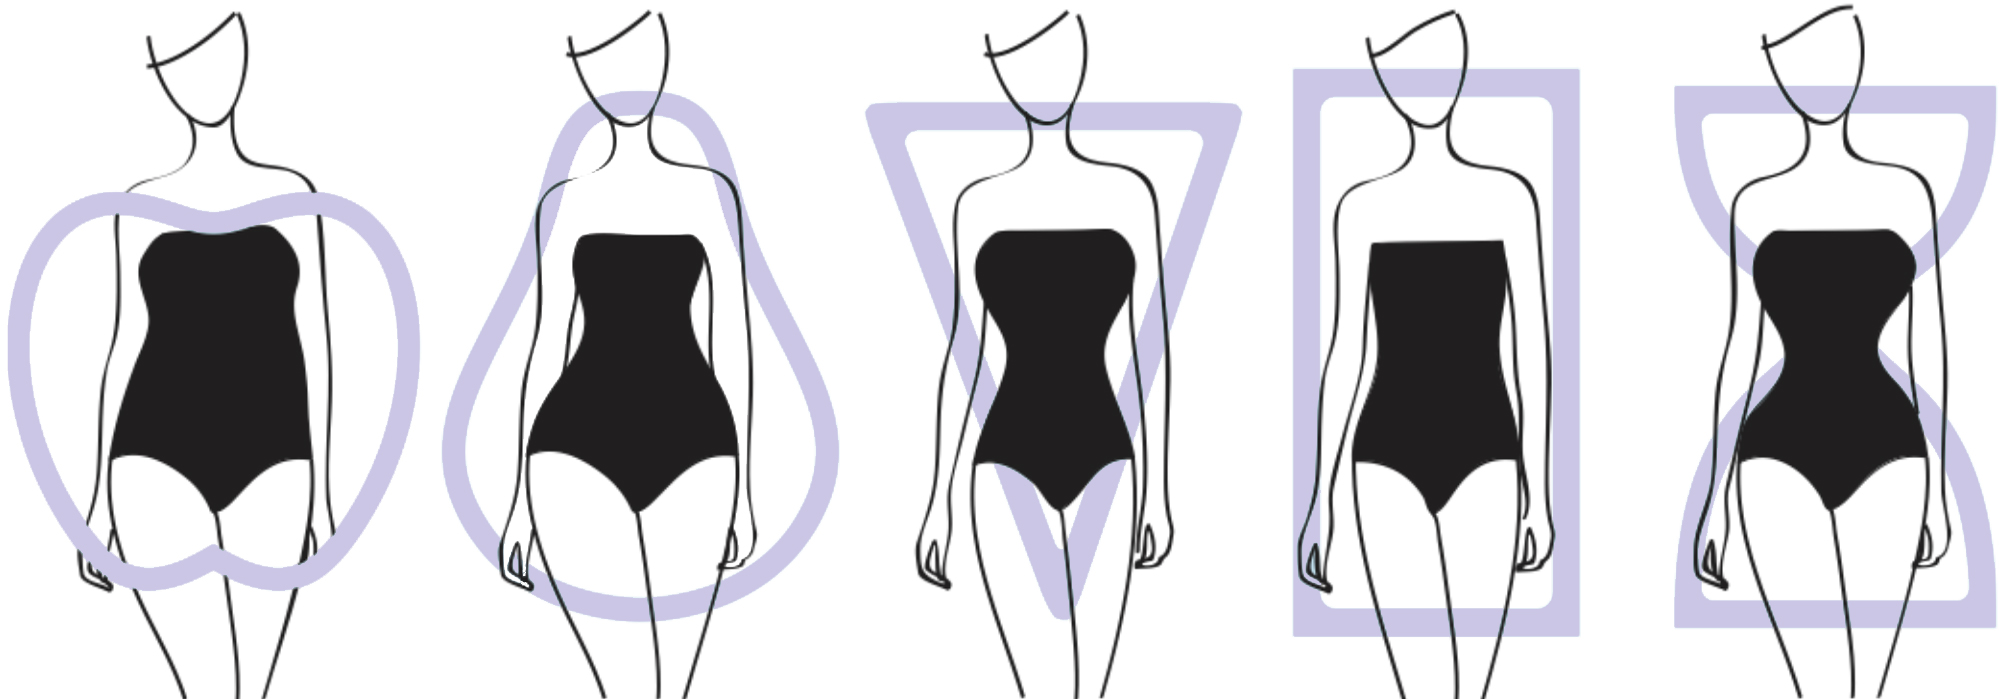 5 Female Body Types